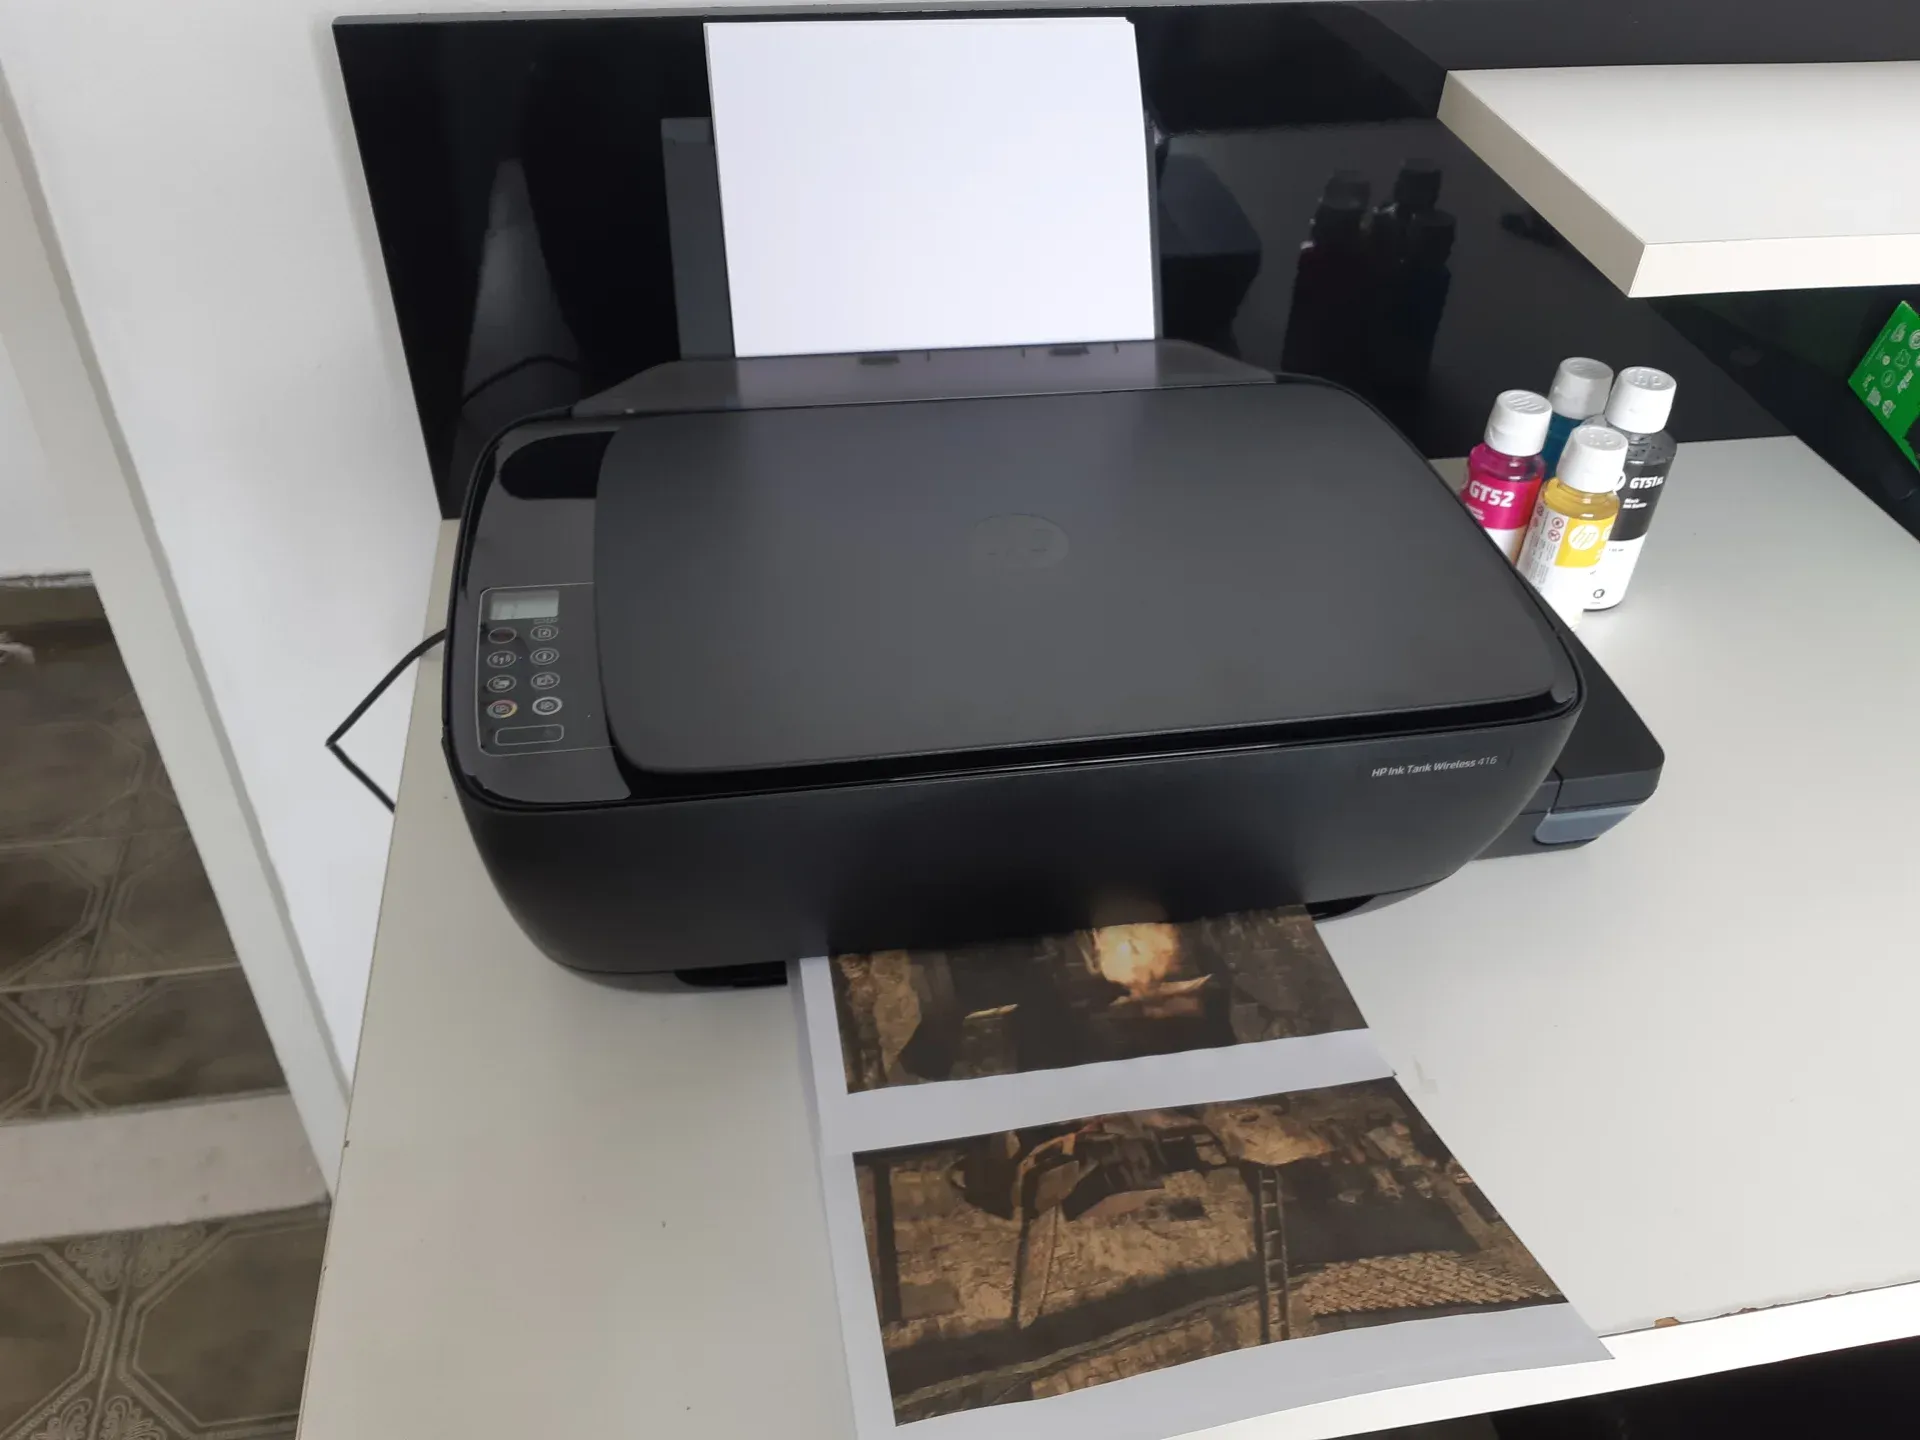 Impressora HP 416 sobre mesa branca imprimindo imagem colorida